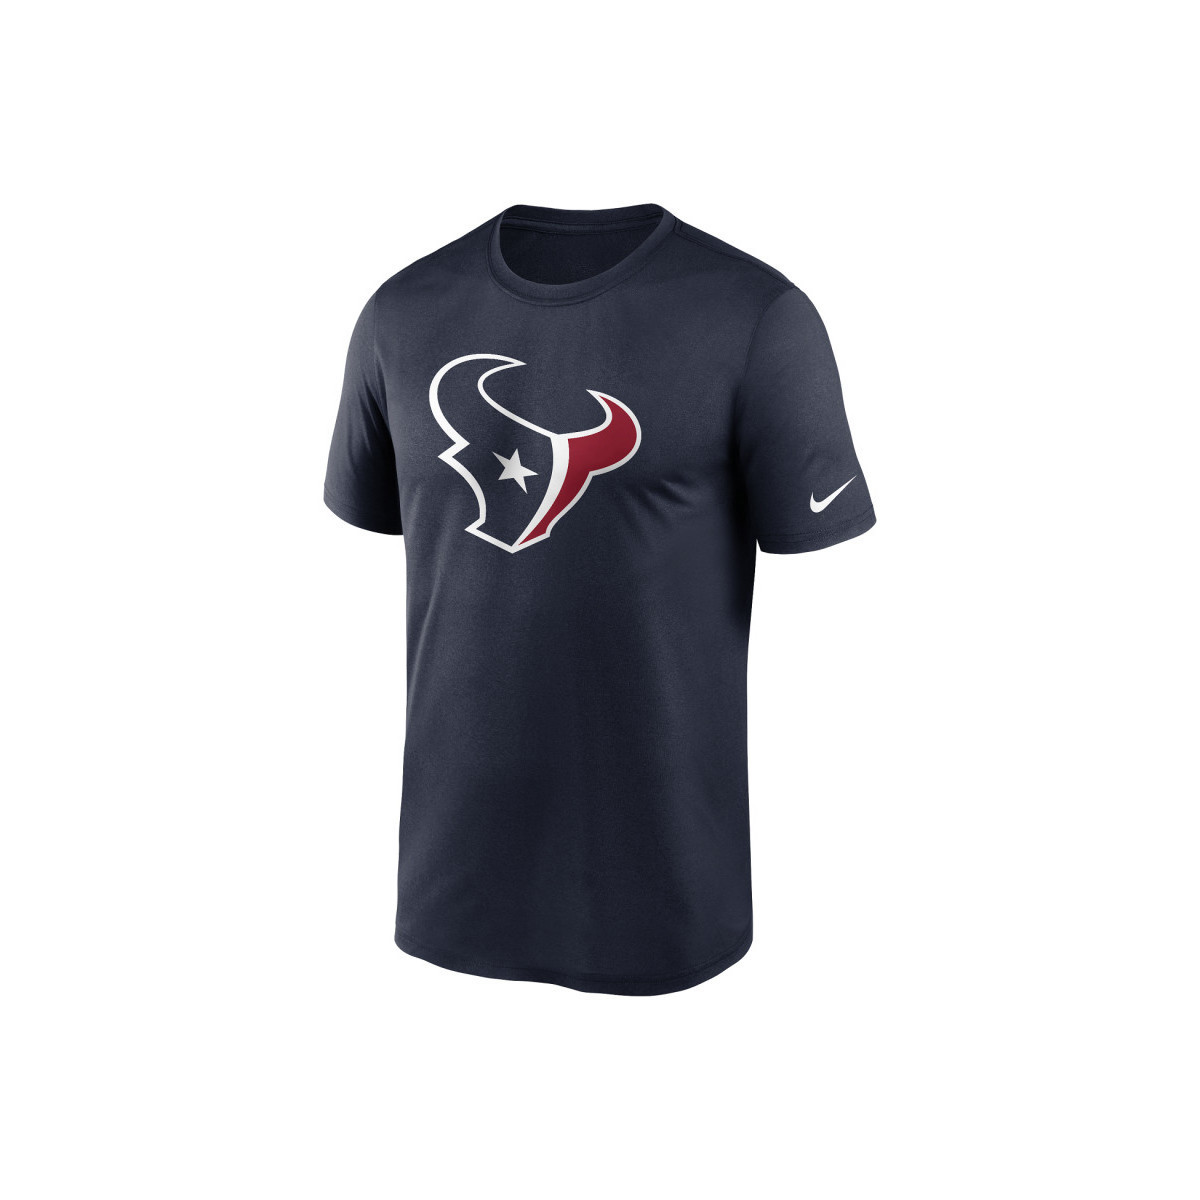 Vêtements T-shirts manches courtes Nike T-shirt NFL Houston Texans Nik Multicolore